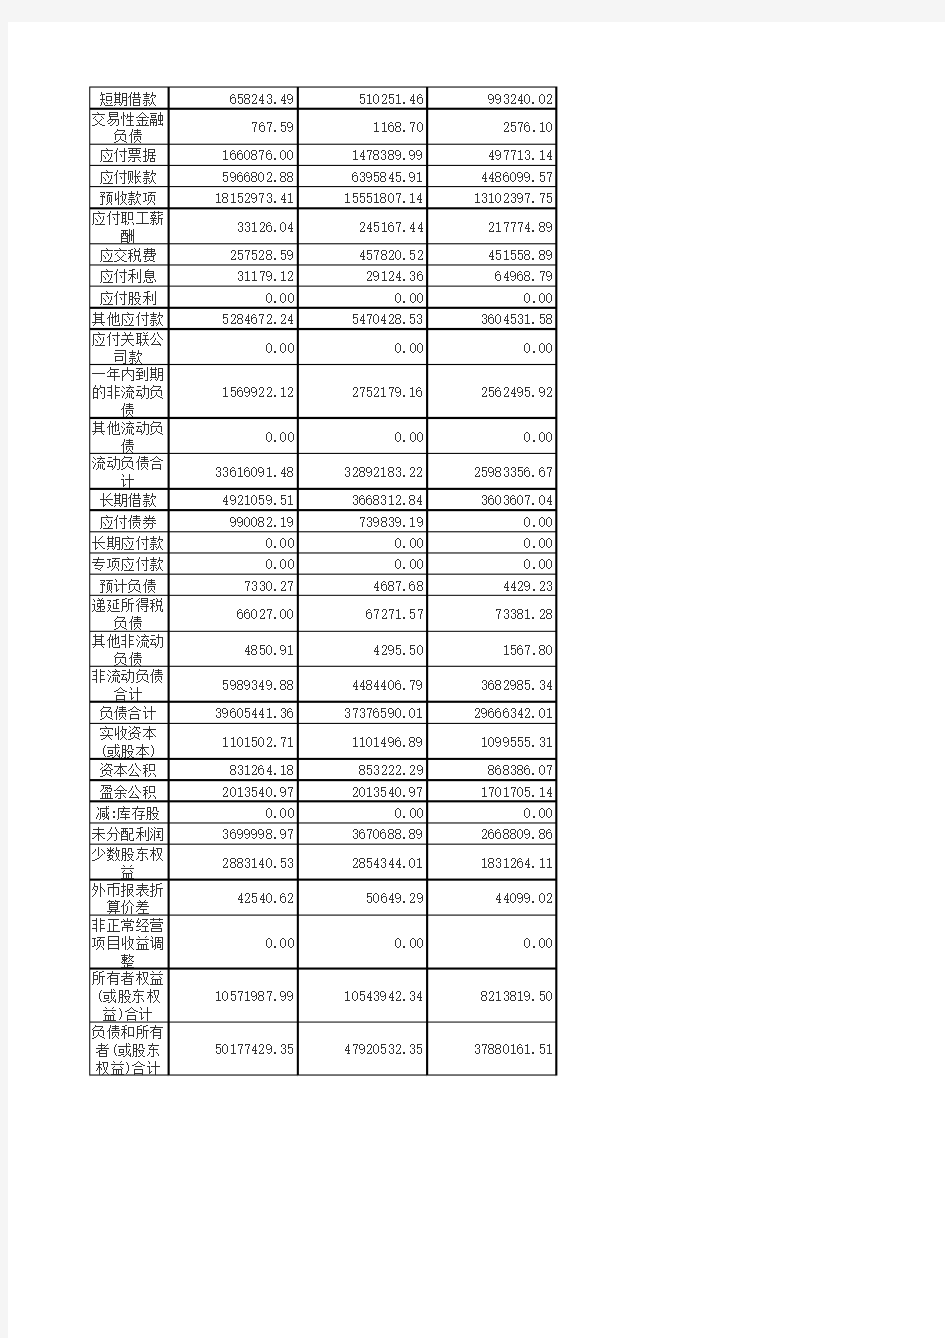 万科、滨江、金科地产公司的2012-2014年财务报表数据及分析